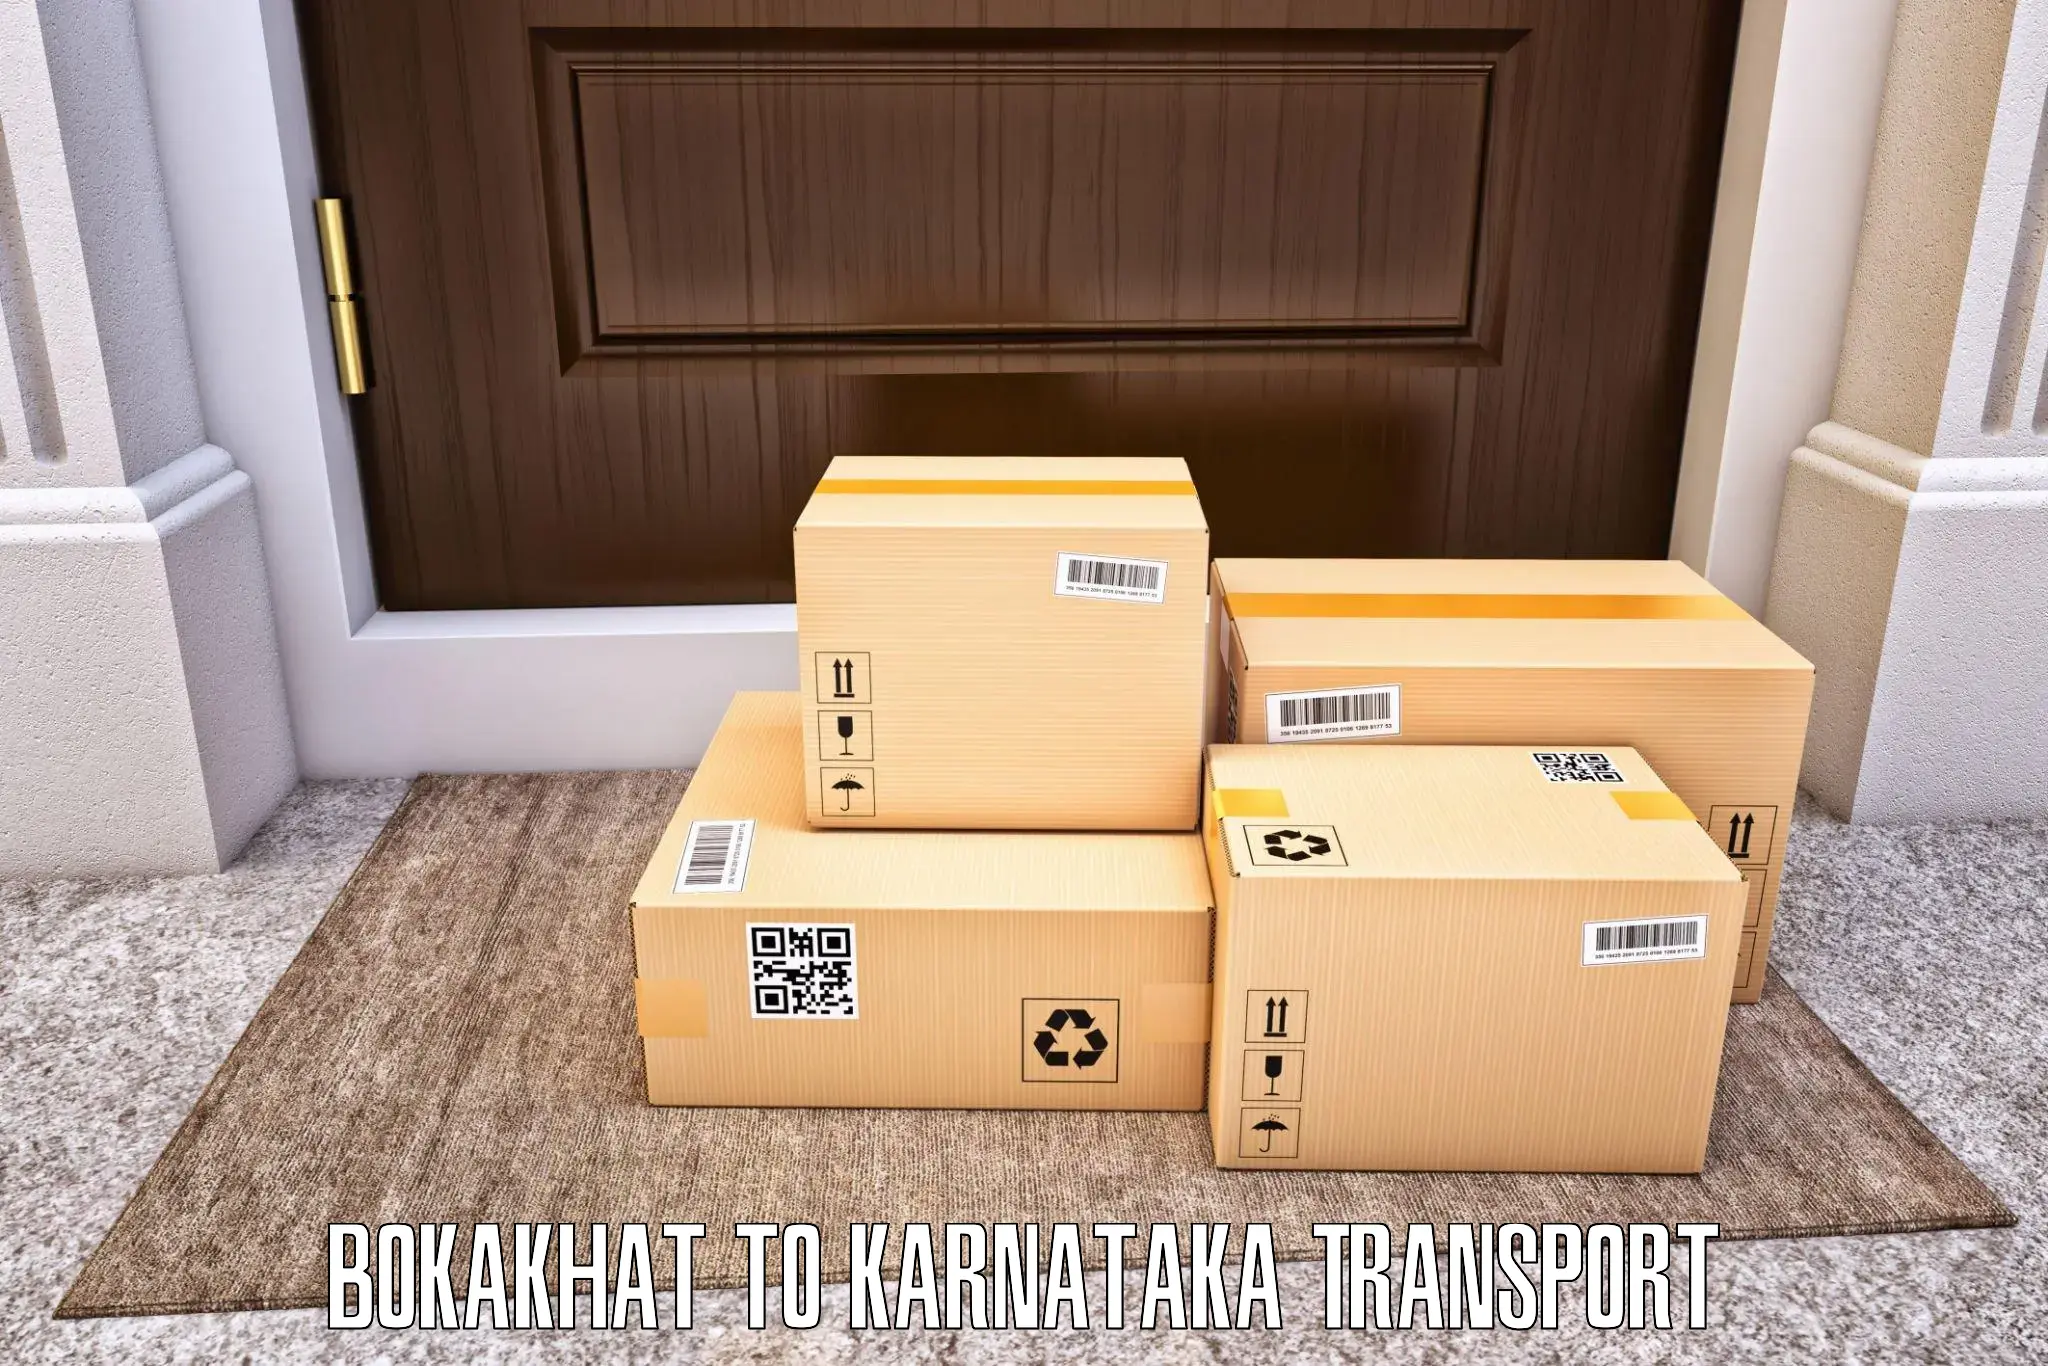 Daily parcel service transport Bokakhat to Khanapur Karnataka